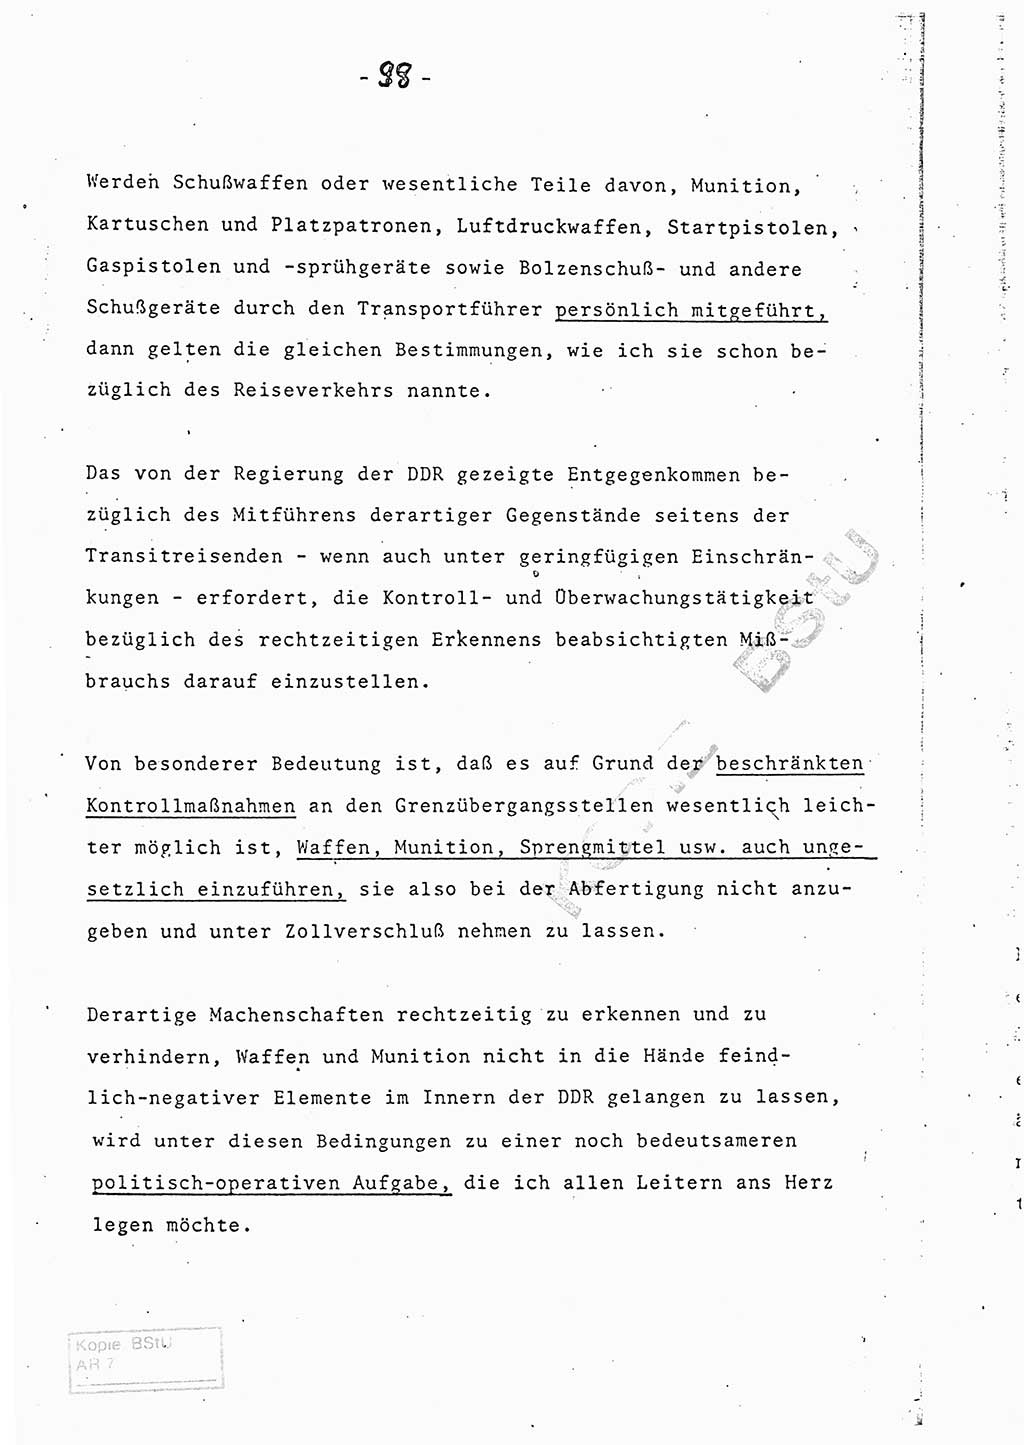 Referat (Entwurf) des Genossen Minister (Generaloberst Erich Mielke) auf der Dienstkonferenz 1972, Ministerium für Staatssicherheit (MfS) [Deutsche Demokratische Republik (DDR)], Der Minister, Geheime Verschlußsache (GVS) 008-150/72, Berlin 25.2.1972, Seite 98 (Ref. Entw. DK MfS DDR Min. GVS 008-150/72 1972, S. 98)